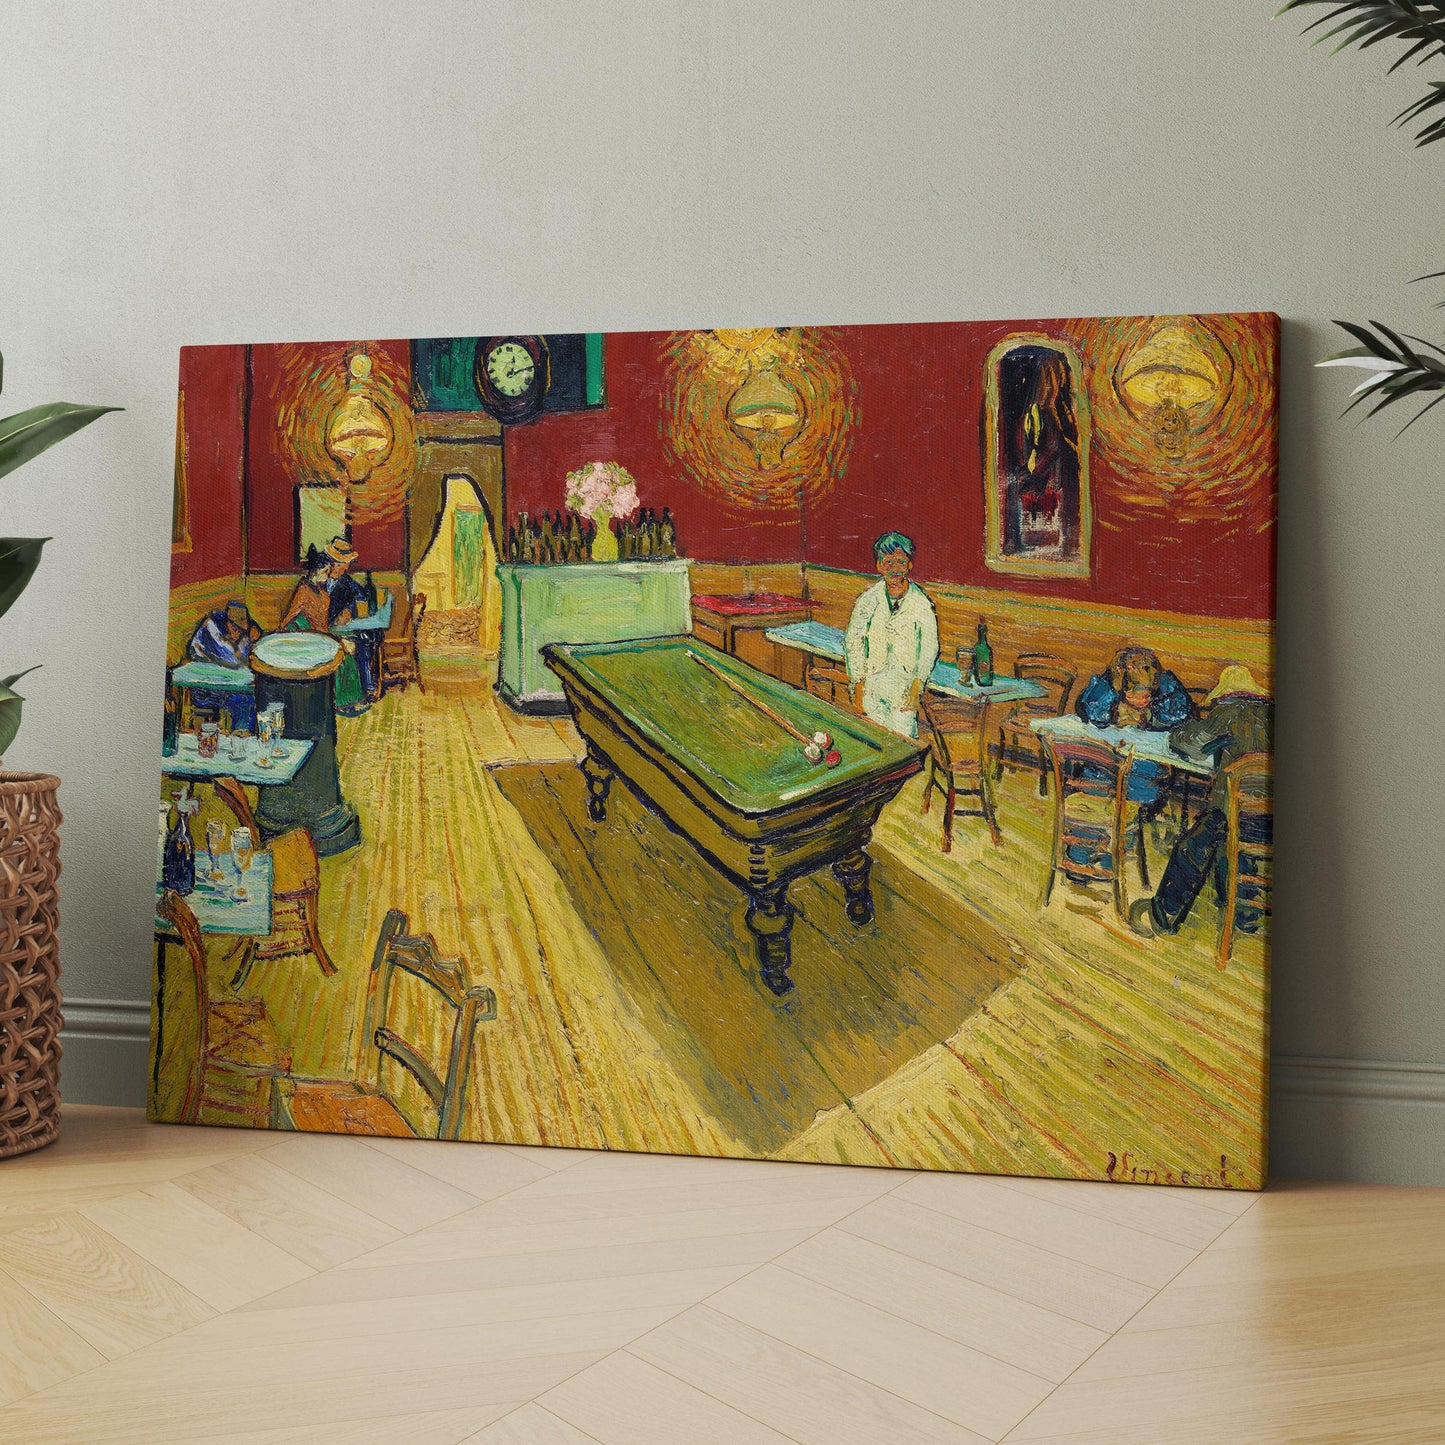 The Night Café (1888) by Van Gogh